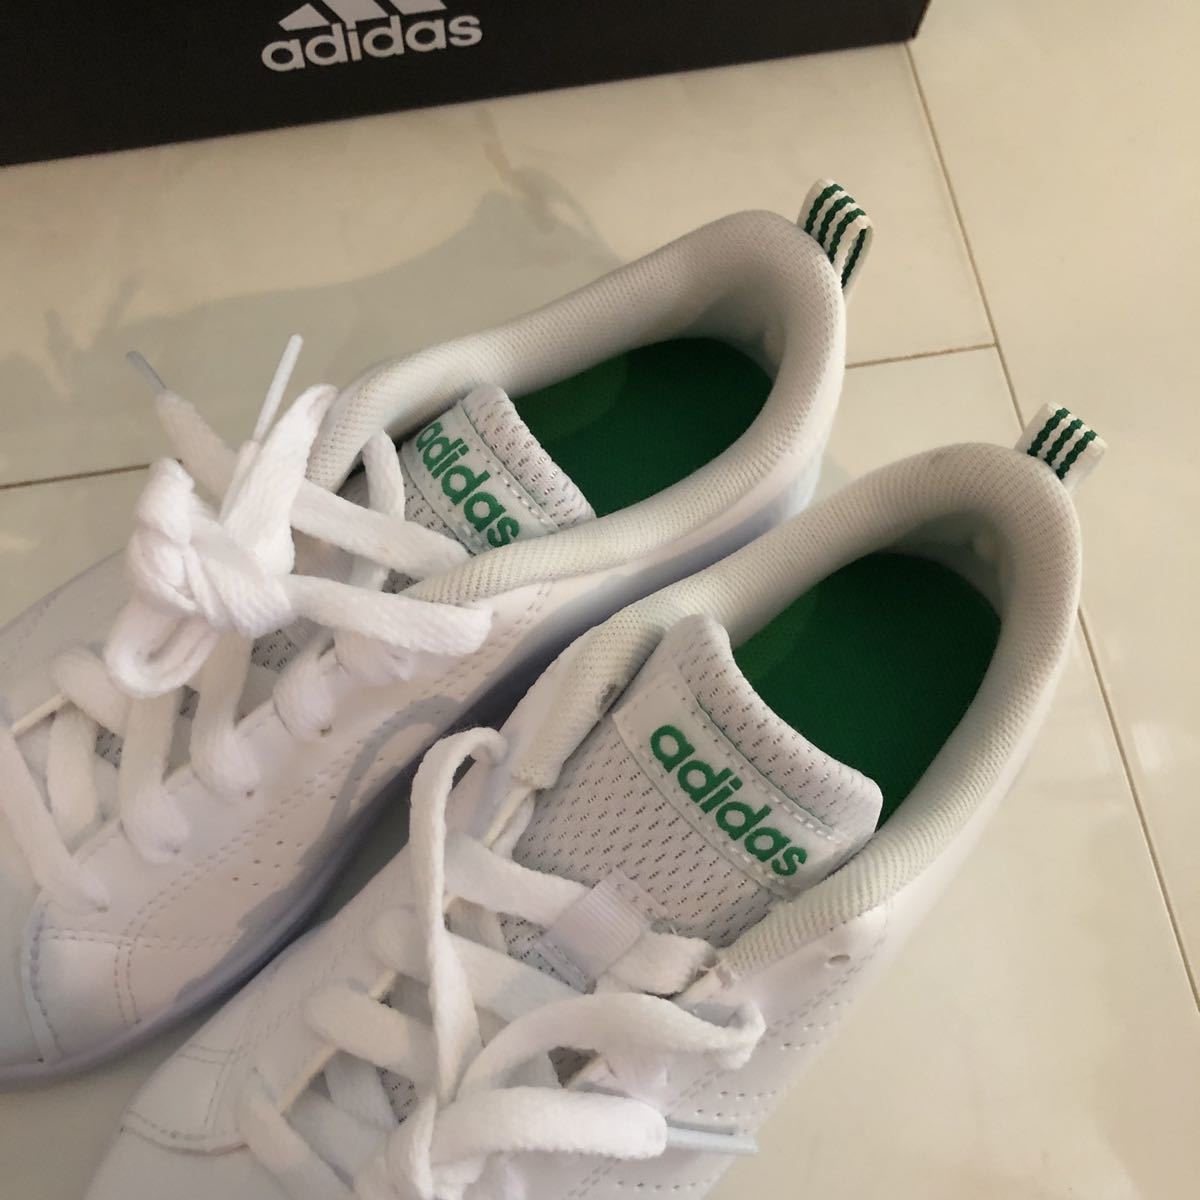  новый товар [ Adidas ]20.0 зеленый VALCLEAN2 K bar clean Kids спортивные туфли low cut мужчина девочка посещение школы обувь 